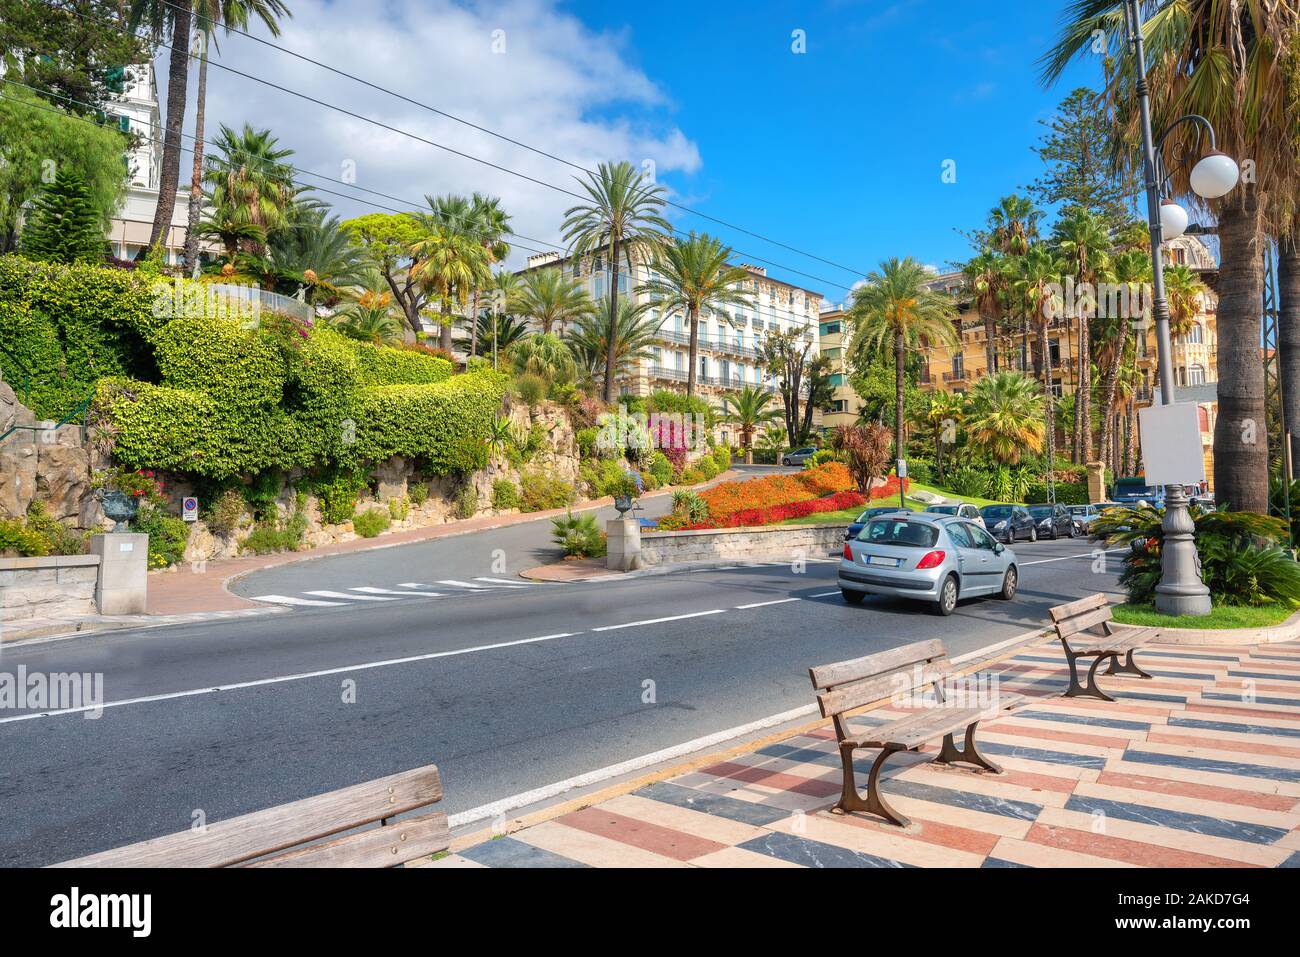 Vista de la carretera y colorida calle costera en San Remo. Liguria, Italia Foto de stock